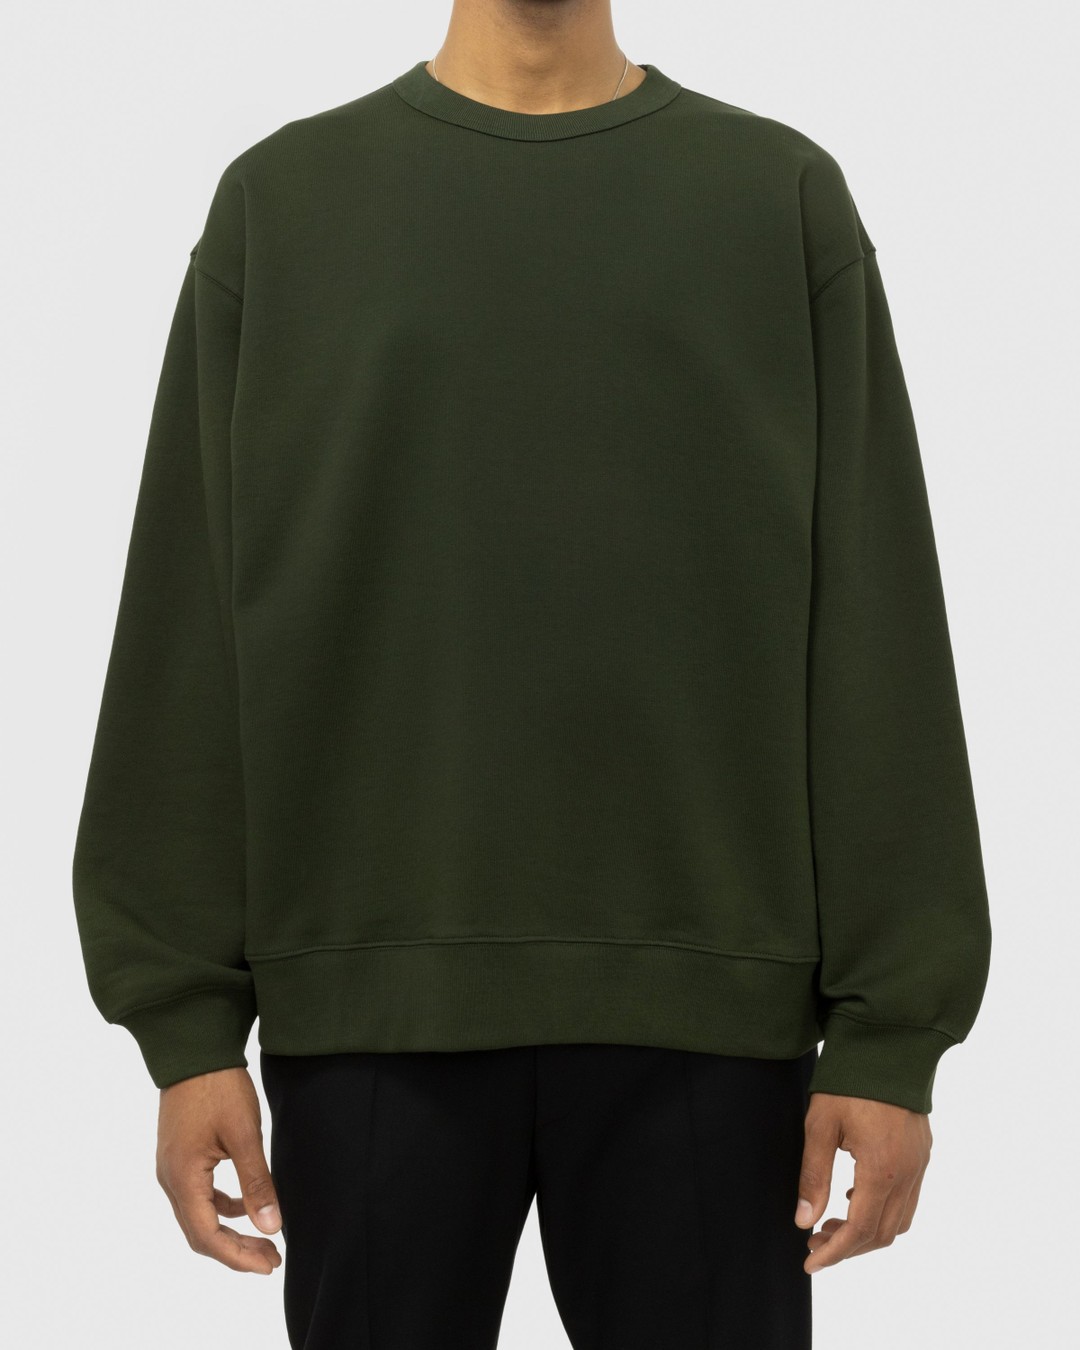 Dries van Noten – Hax Oversized Crewneck Green - Sweatshirts - Green - Image 3